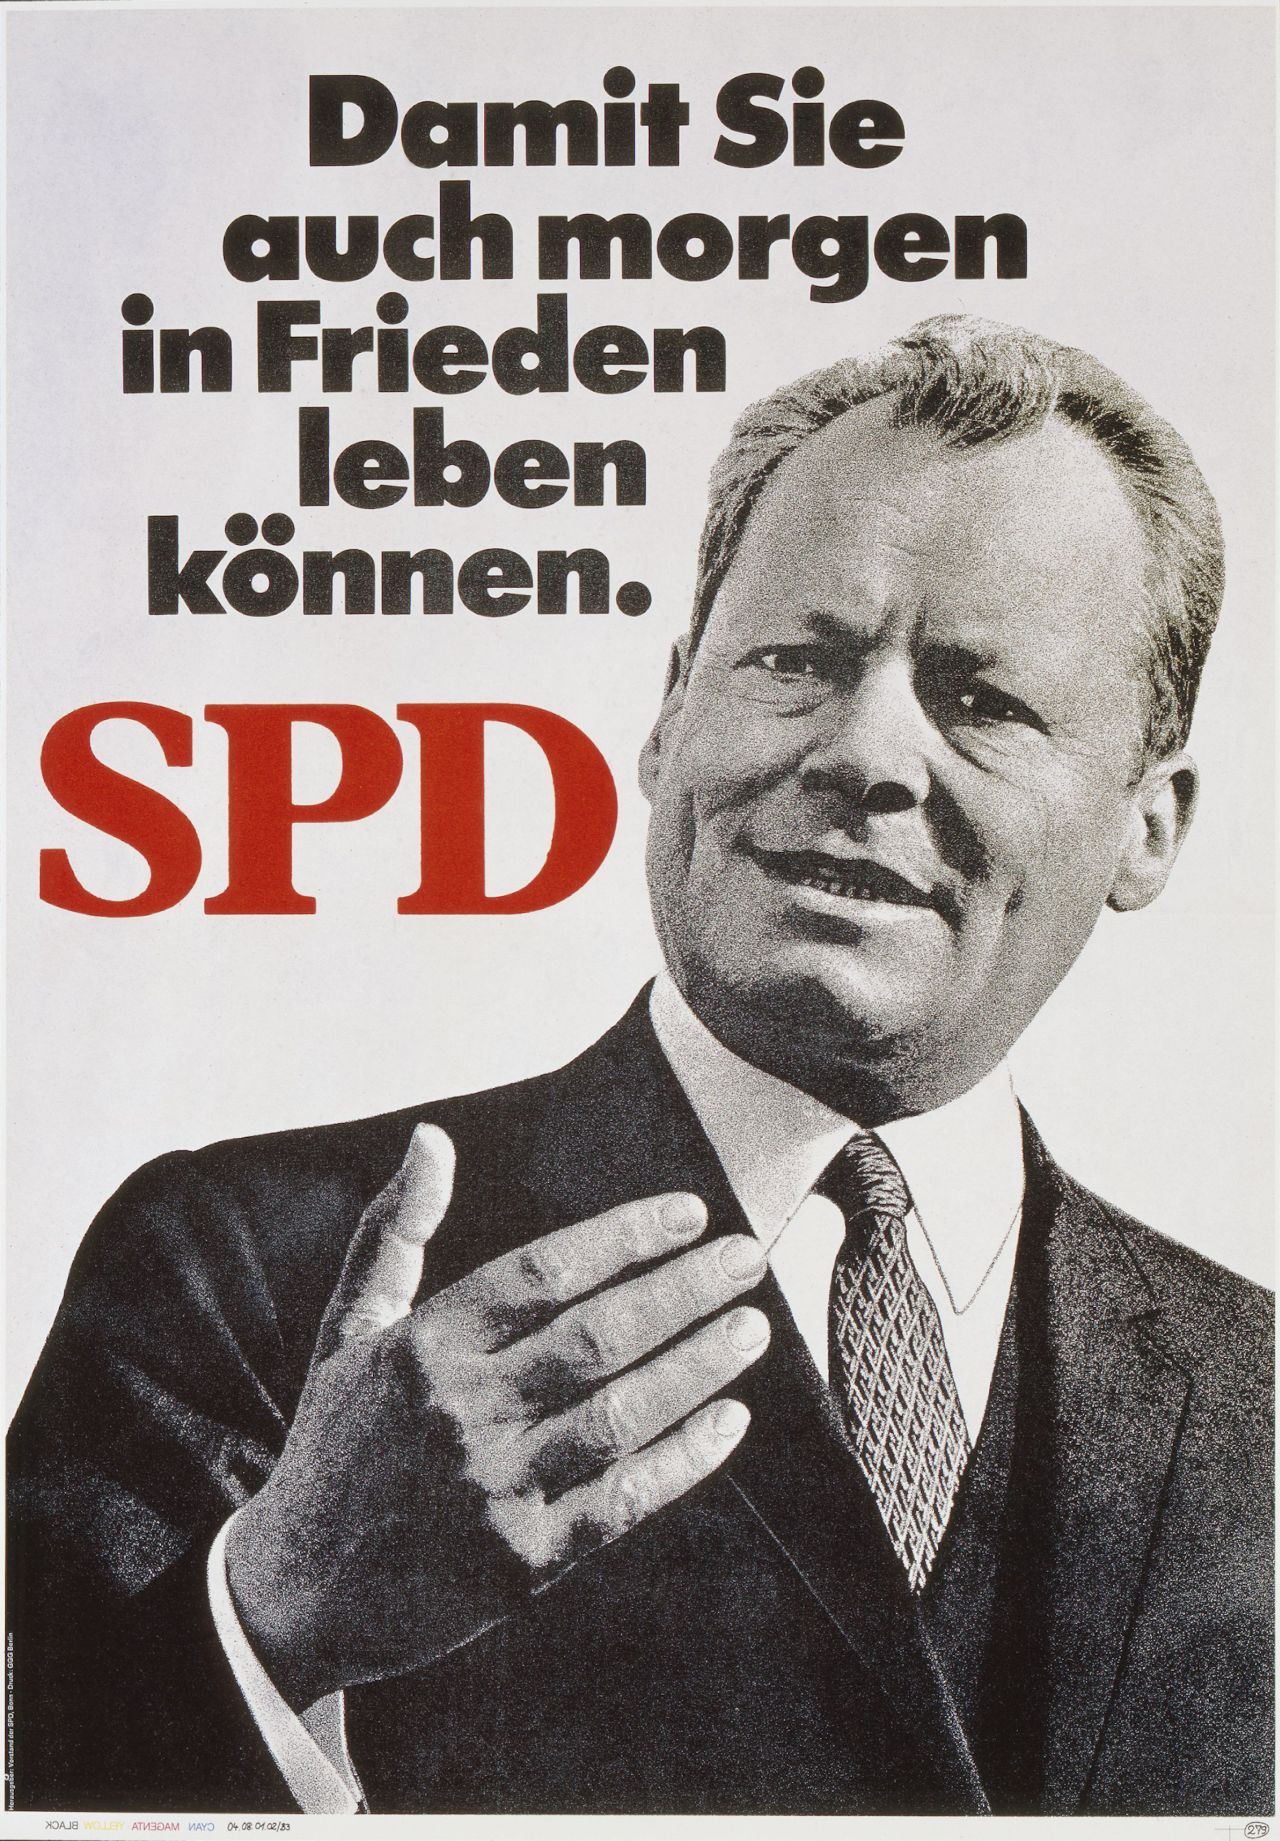 Damit Sie auch morgen in Frieden leben können - Wahlkampfplakat der SPD Bundestagswahl 1969